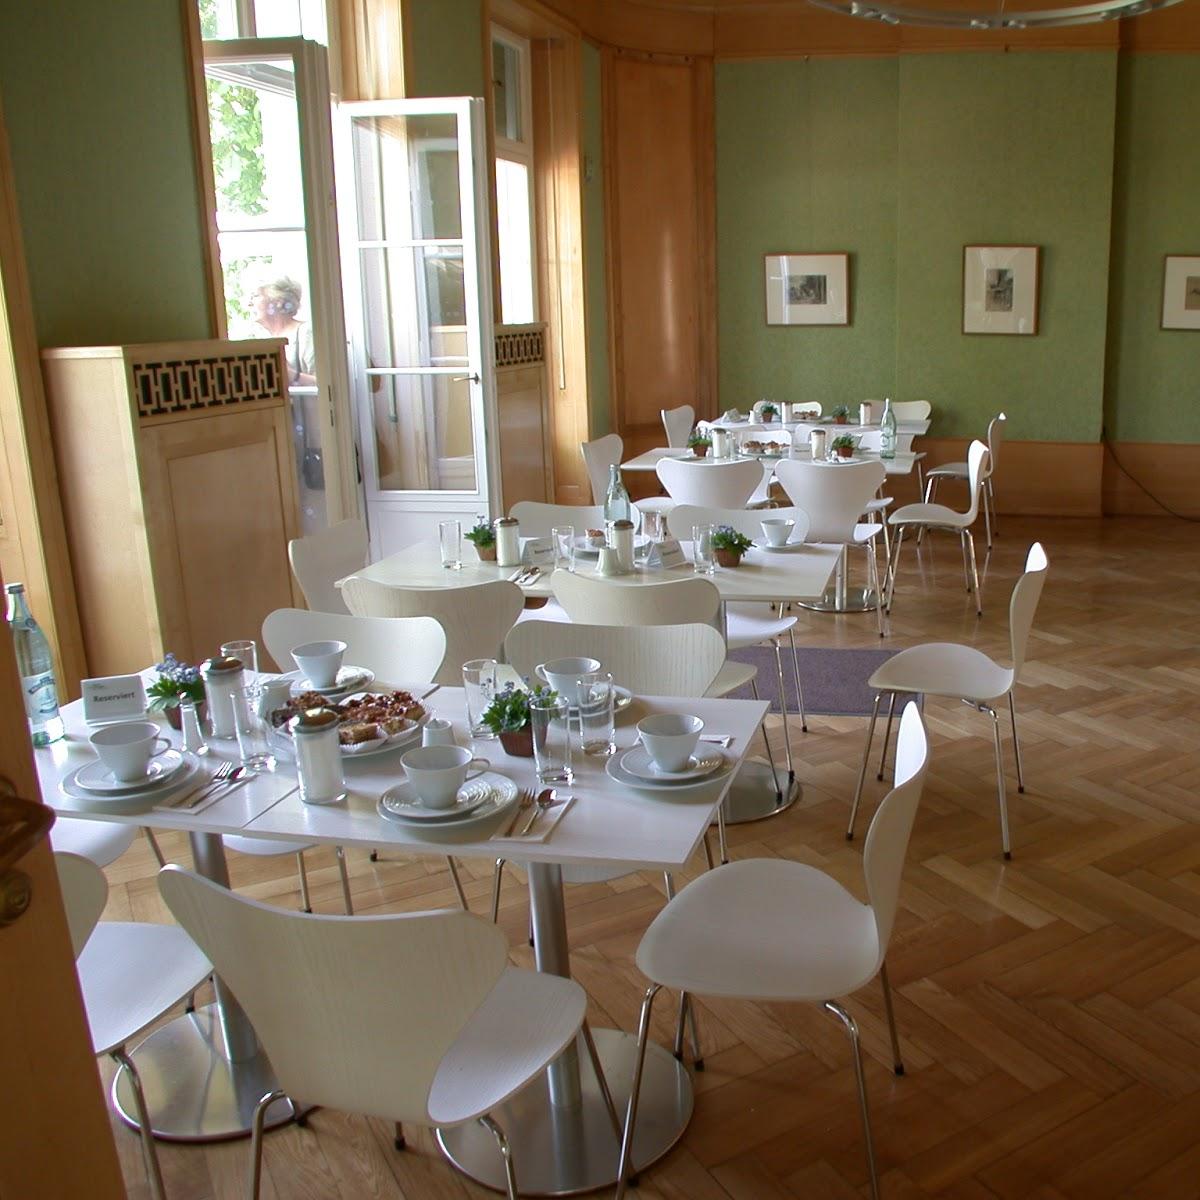 Restaurant "Café Max in der Liebermann-Villa" in Berlin